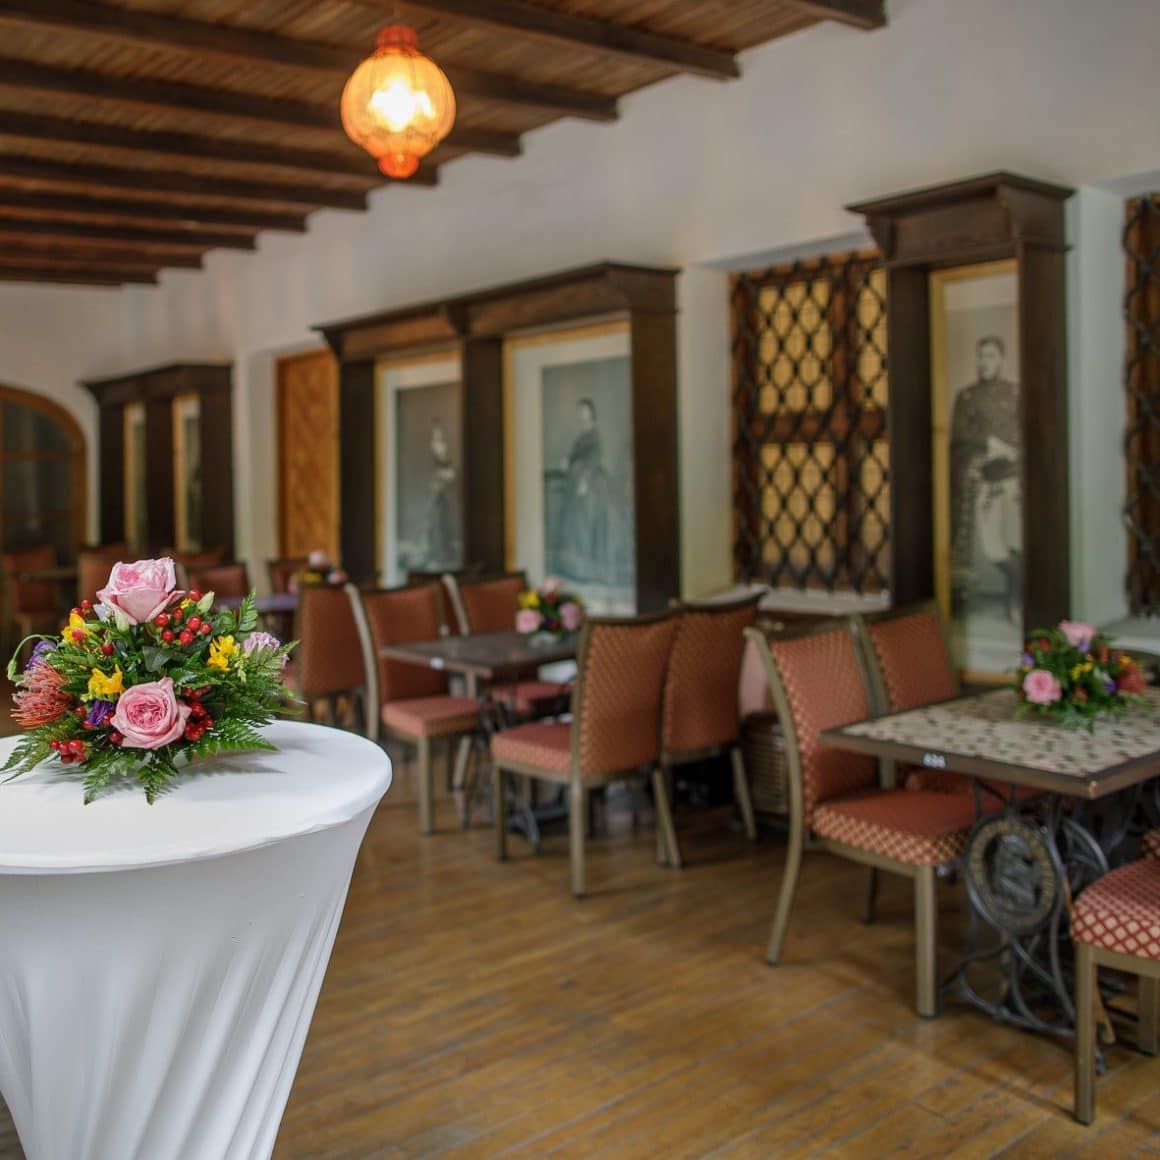 incapere din restaurant hanu lui Manuc, decorata in stil clasic, cu rame mari de fotografii alb negru